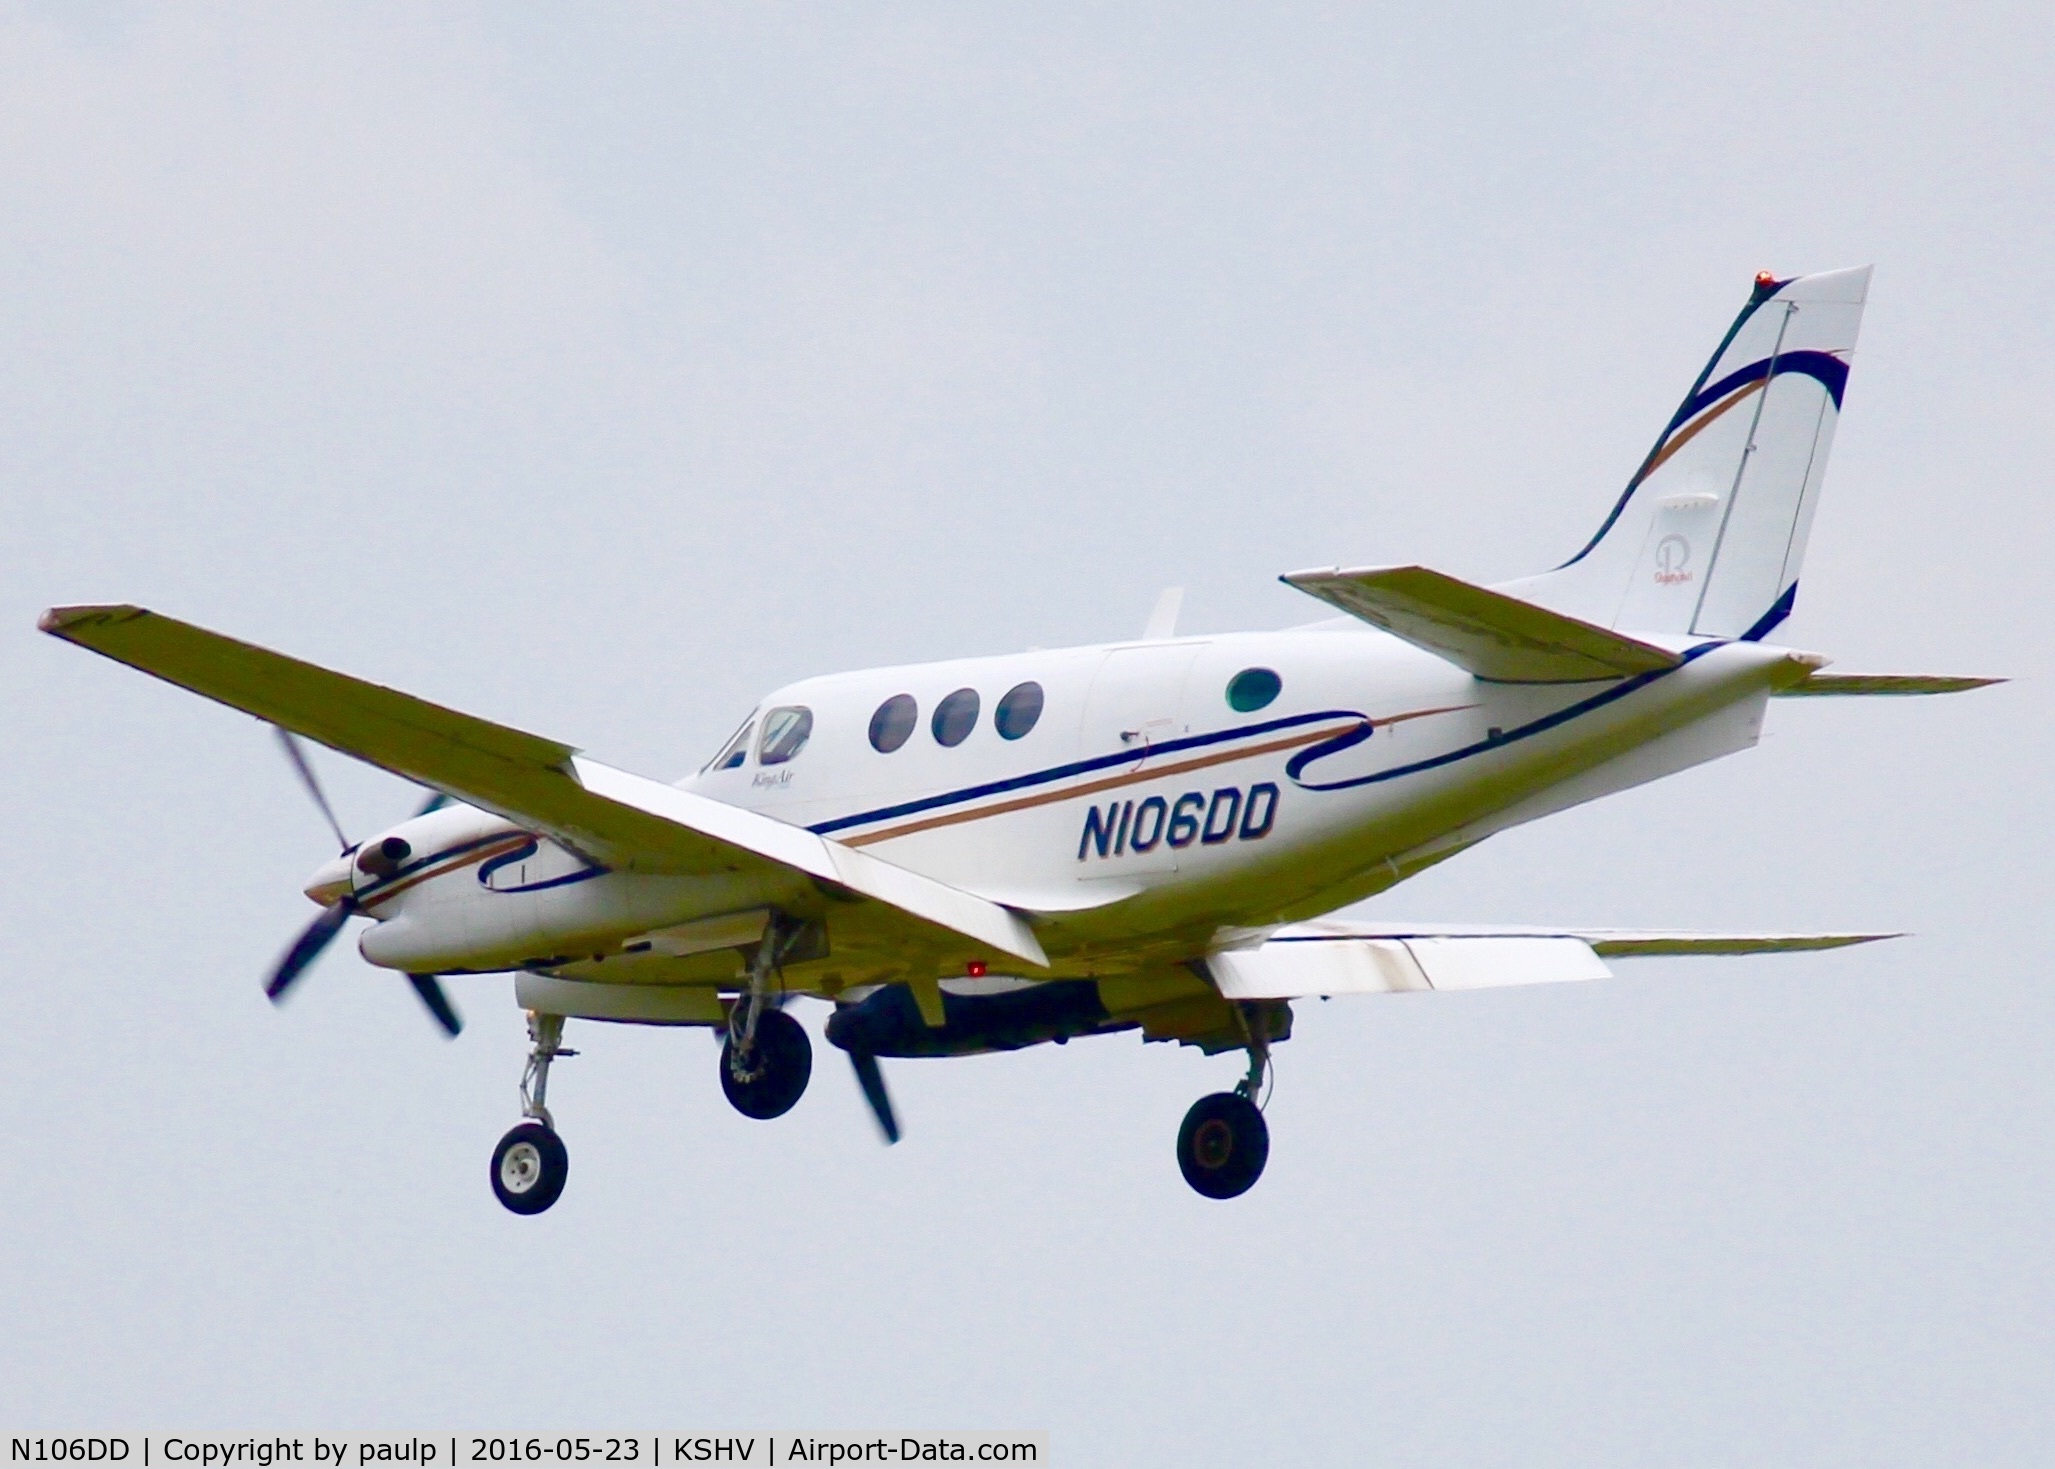 N106DD, 2005 Raytheon Aircraft Company C90A C/N LJ-1738, At Shreveport Regional.